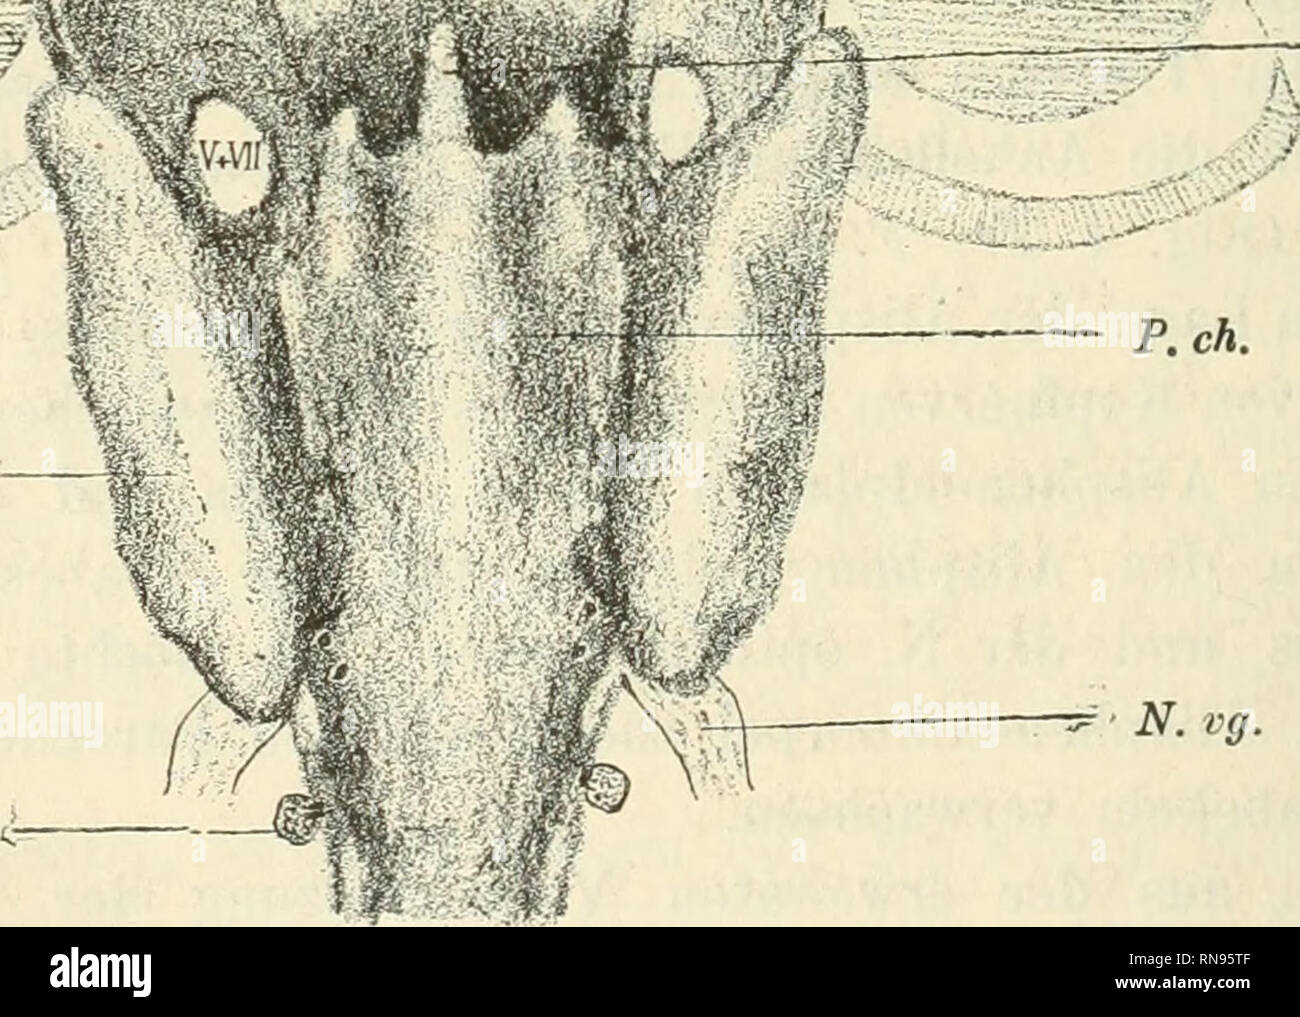 . Anatomischer Anzeiger. Anatomy, Comparative; Anatomy, Comparative. 'fC^'^1 Tr l1 ' „^^tiiyi^u::^^^^ C. au. Sp.d^. - Ch —' - N. vg. Fig. 2. Graphische Reconstruction des Schädels eines etwas älteren als des in Fig. 1 dargestellten Acanthiasembryos (nach Frontalschnitten). P. ch. Parachordalplatte; Ch Chorda; Tr Trabecularplatte; R Platte des Rostrums; Als Alisphenoidknordel; C. au. Ohrkapsel; E. Ethmoidknorpel; V + VII Austrittsstelle der Nn. trigeminus und facialis; N. vg. N. vagus; Sp. d^. erstes spinales Ganglion. Die Augeiiblasen sind schraffirt. Die Lage der Nasenkapseln (zwischen Als u Stock Photo